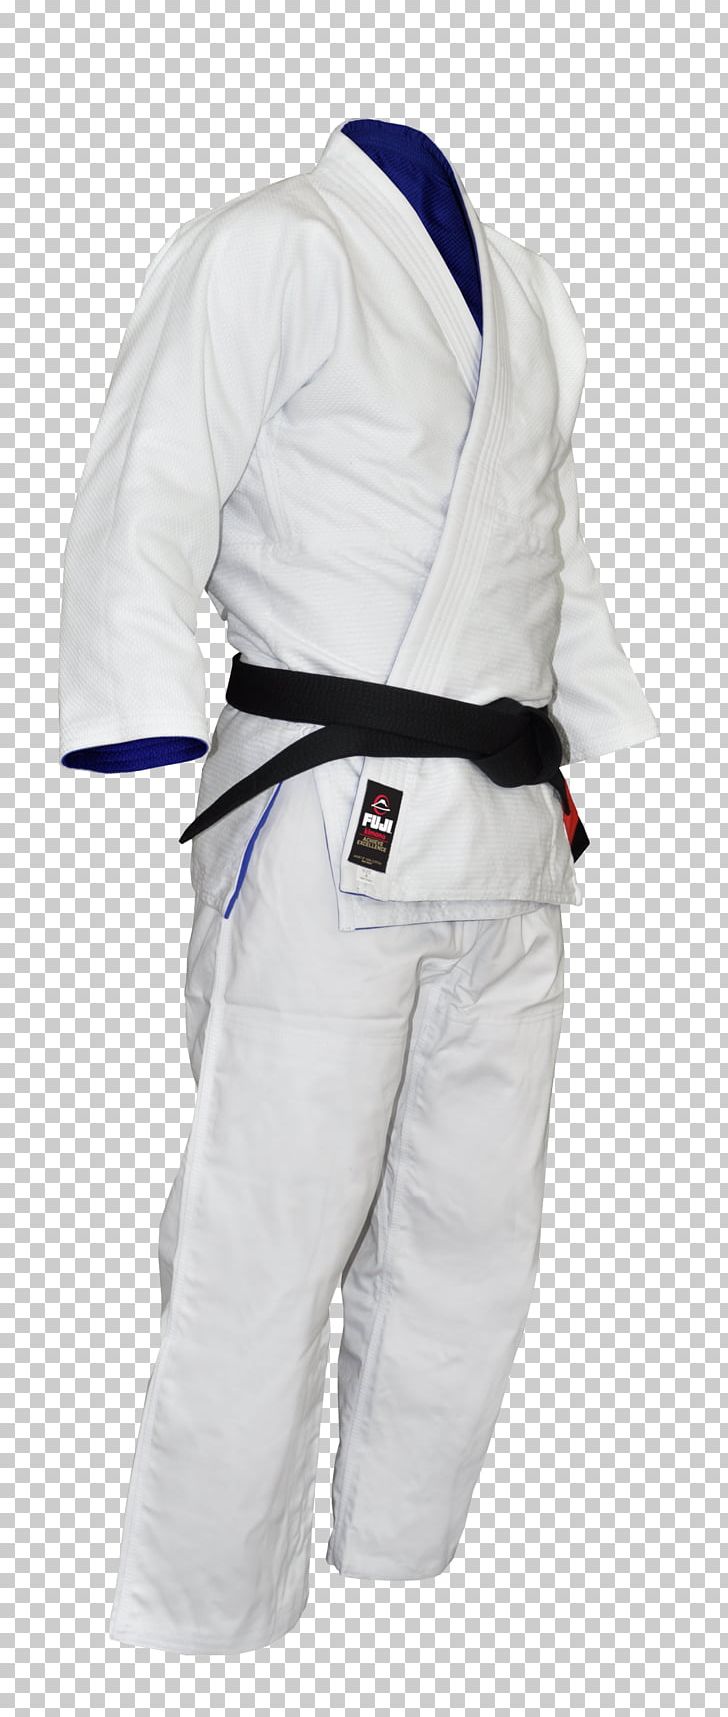 Brazilian Jiu-jitsu Gi Judogi Karate Gi Mixed Martial Arts PNG, Clipart, Arm, Black, Blue, Brazilian Jiujitsu, Brazilian Jiujitsu Gi Free PNG Download